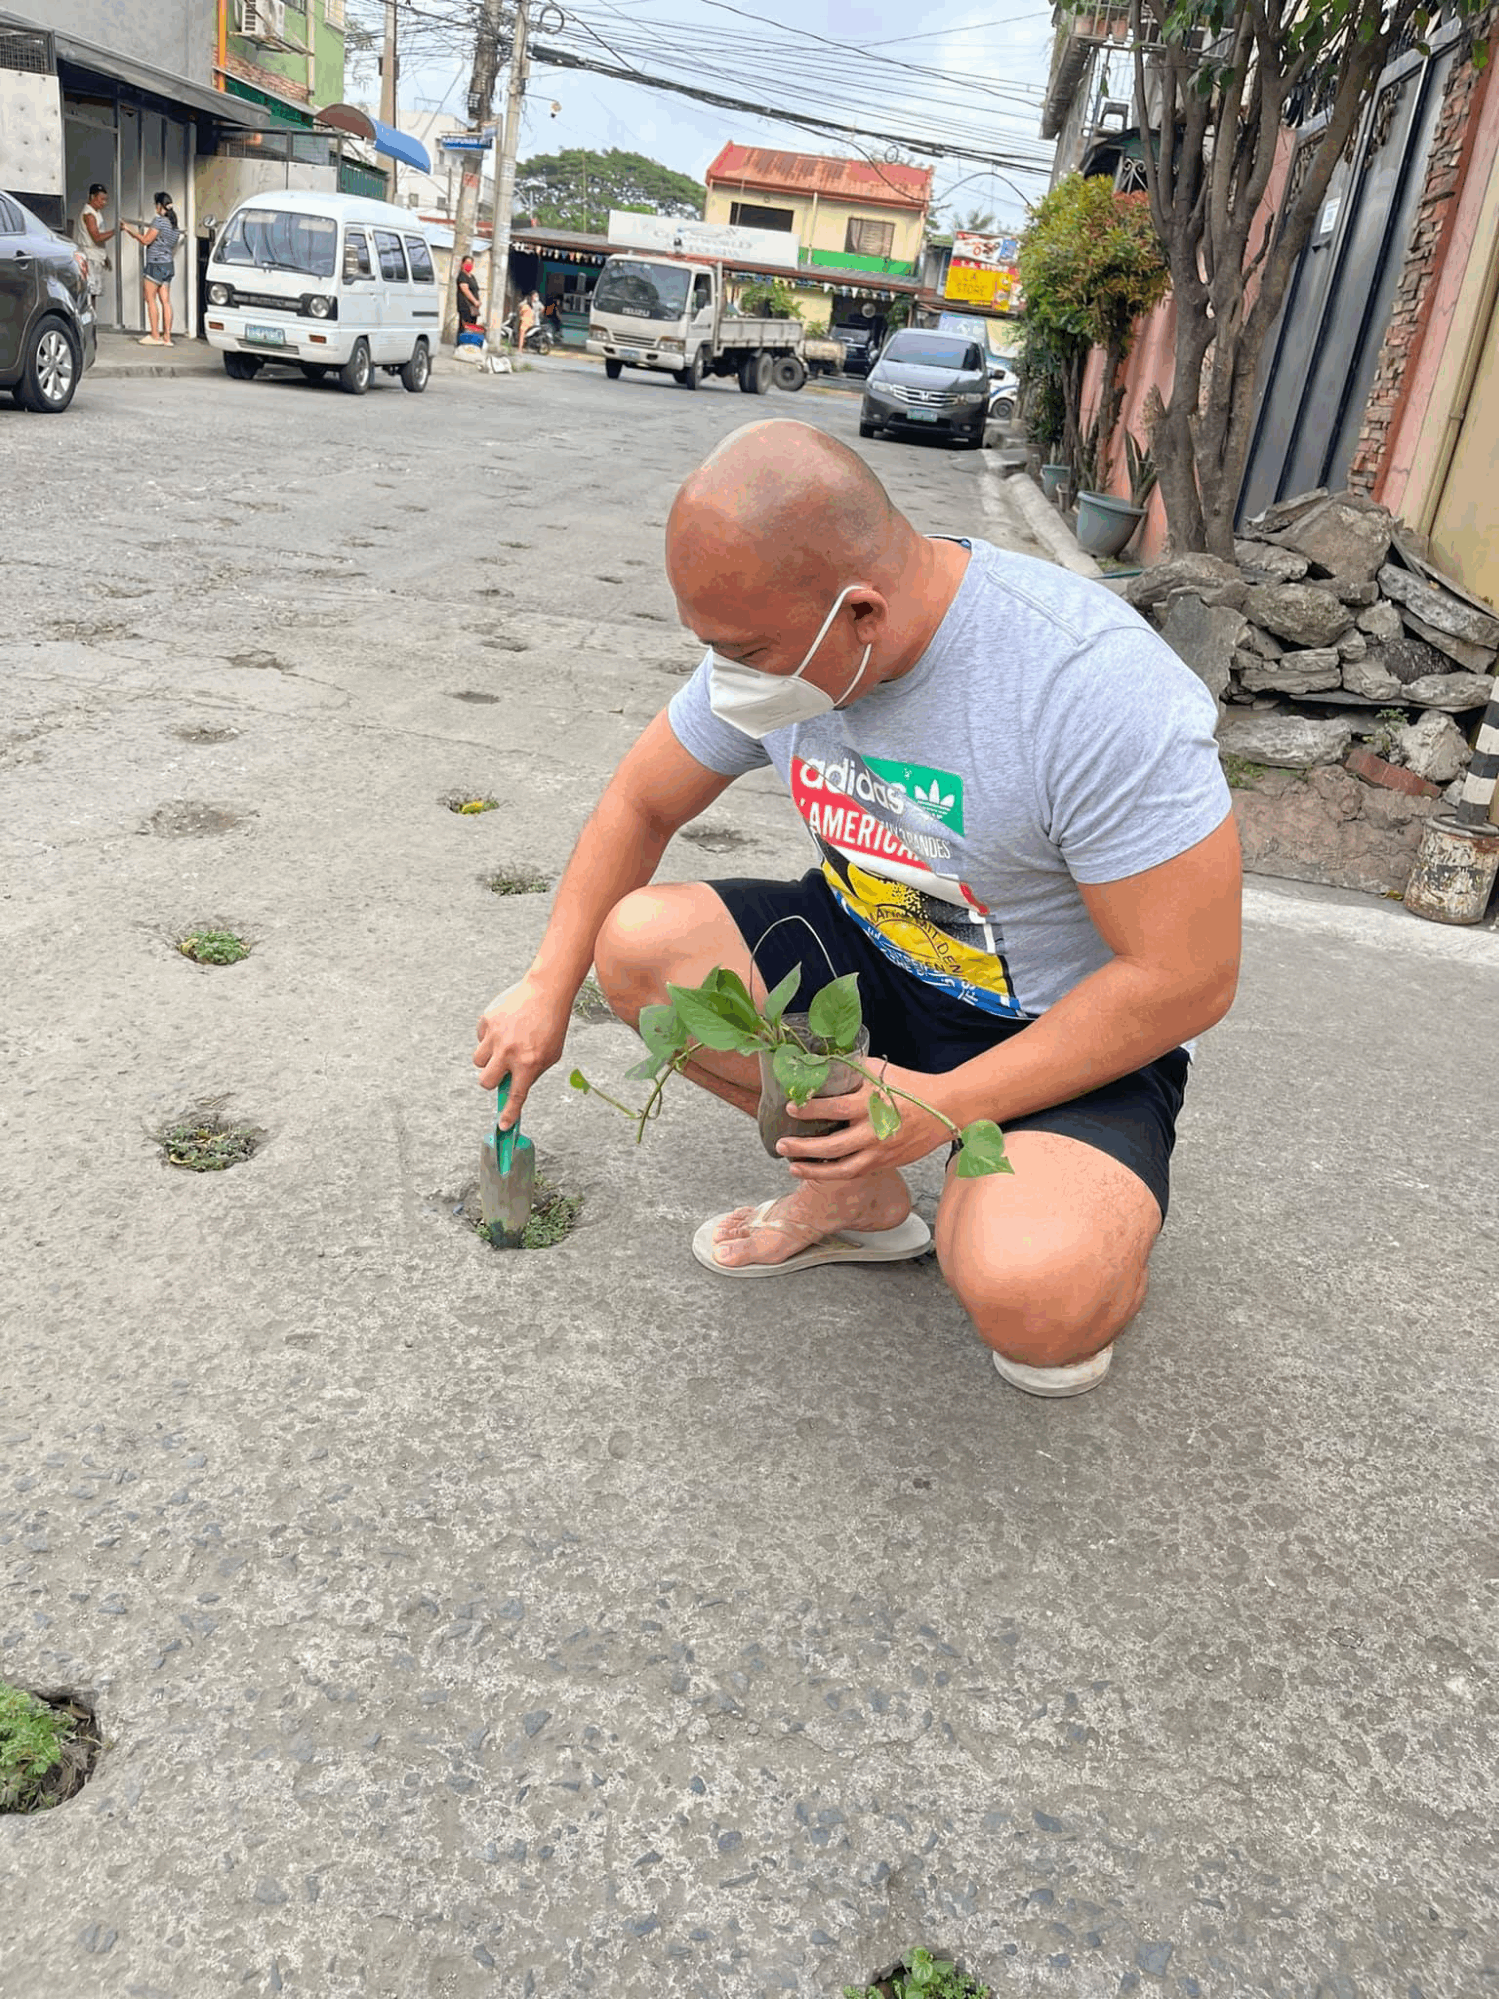 Quezon City plantito - Glenn Cui Infante placing plants in holes 